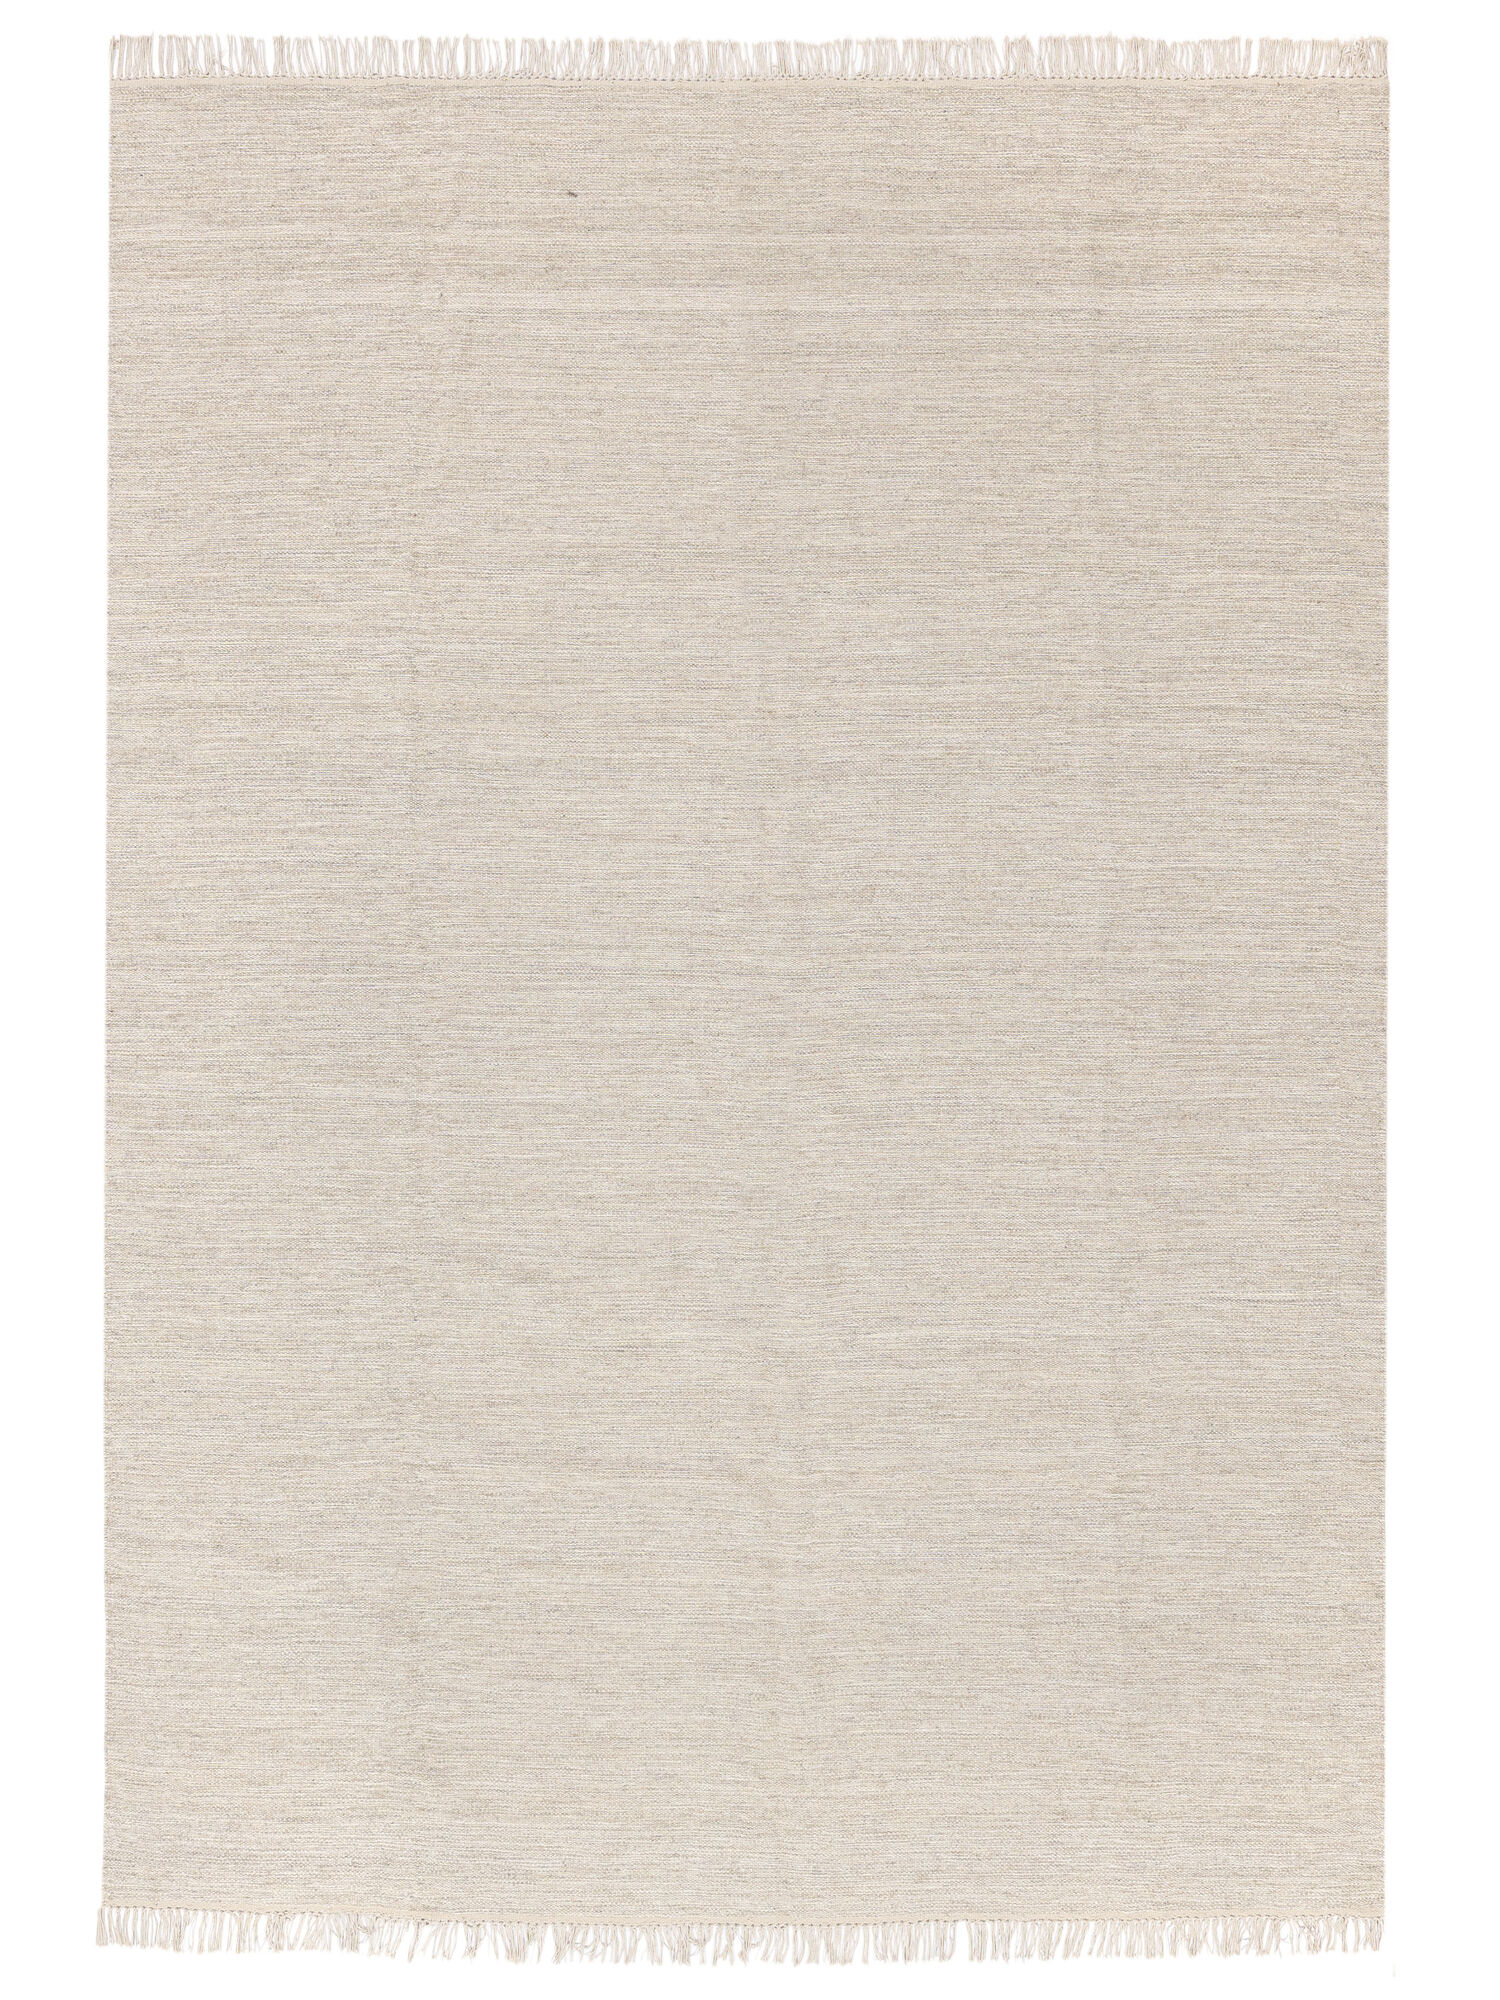 Tappeto per bambini lana beige 100 x 160 cm MUFASA 